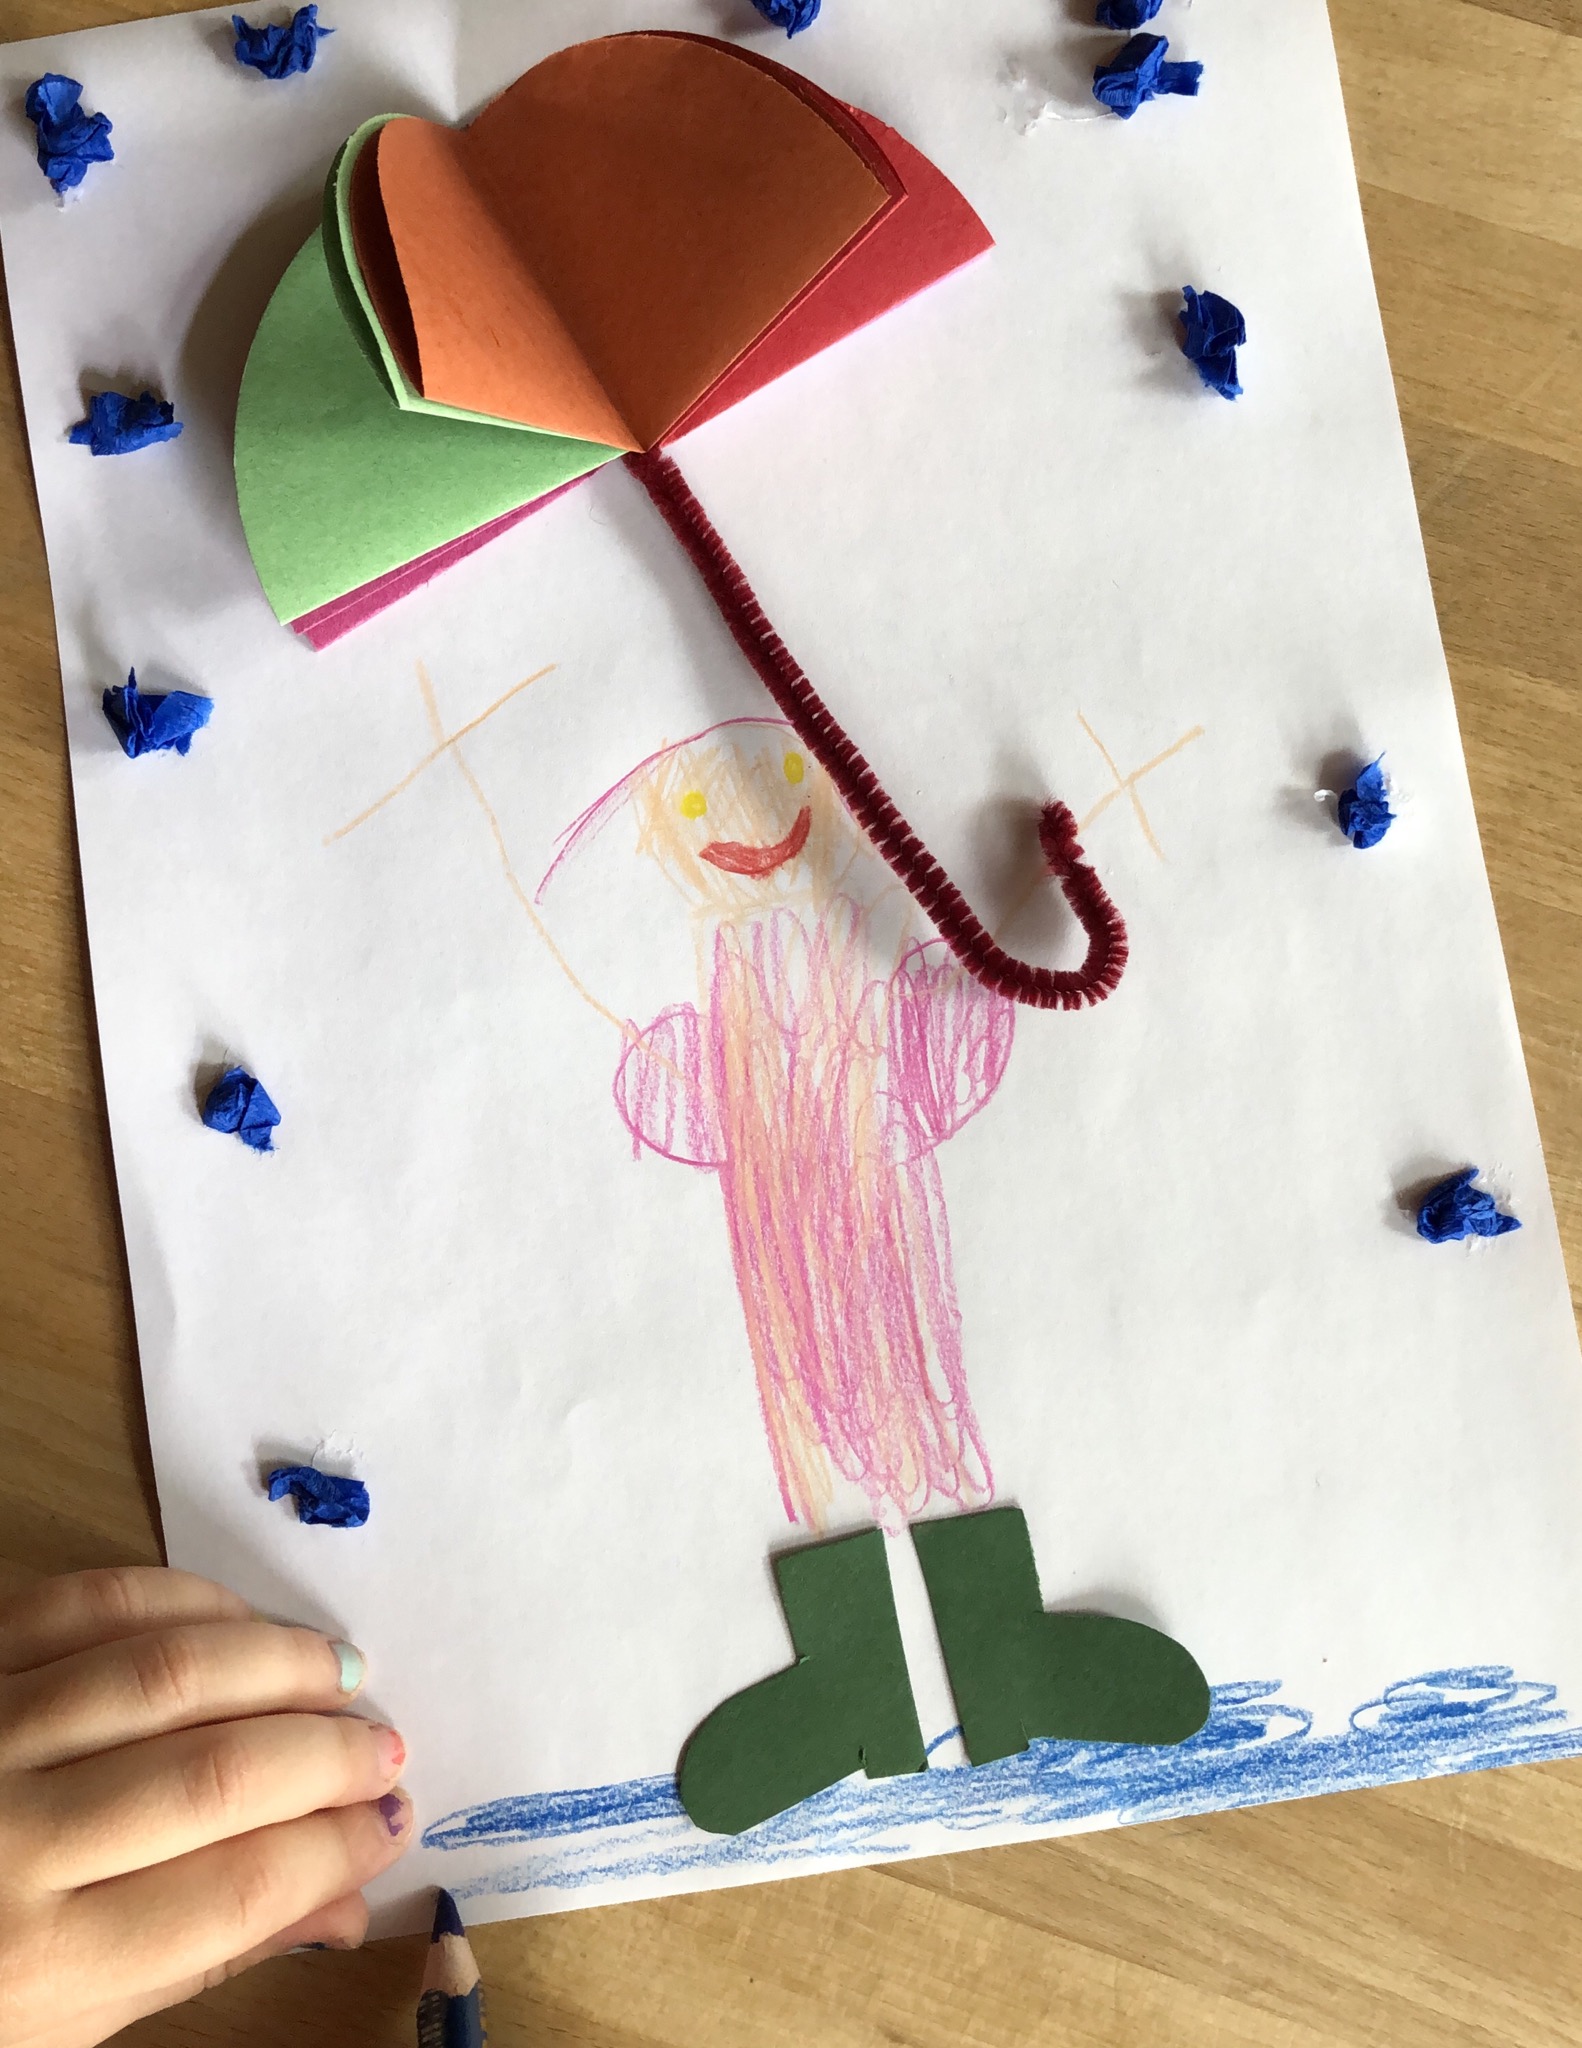 Bild zum Schritt 21 für das Bastel- und DIY-Abenteuer für Kinder: 'Den Schirm so aufs Papier kleben, dass ihn das Männchen...'